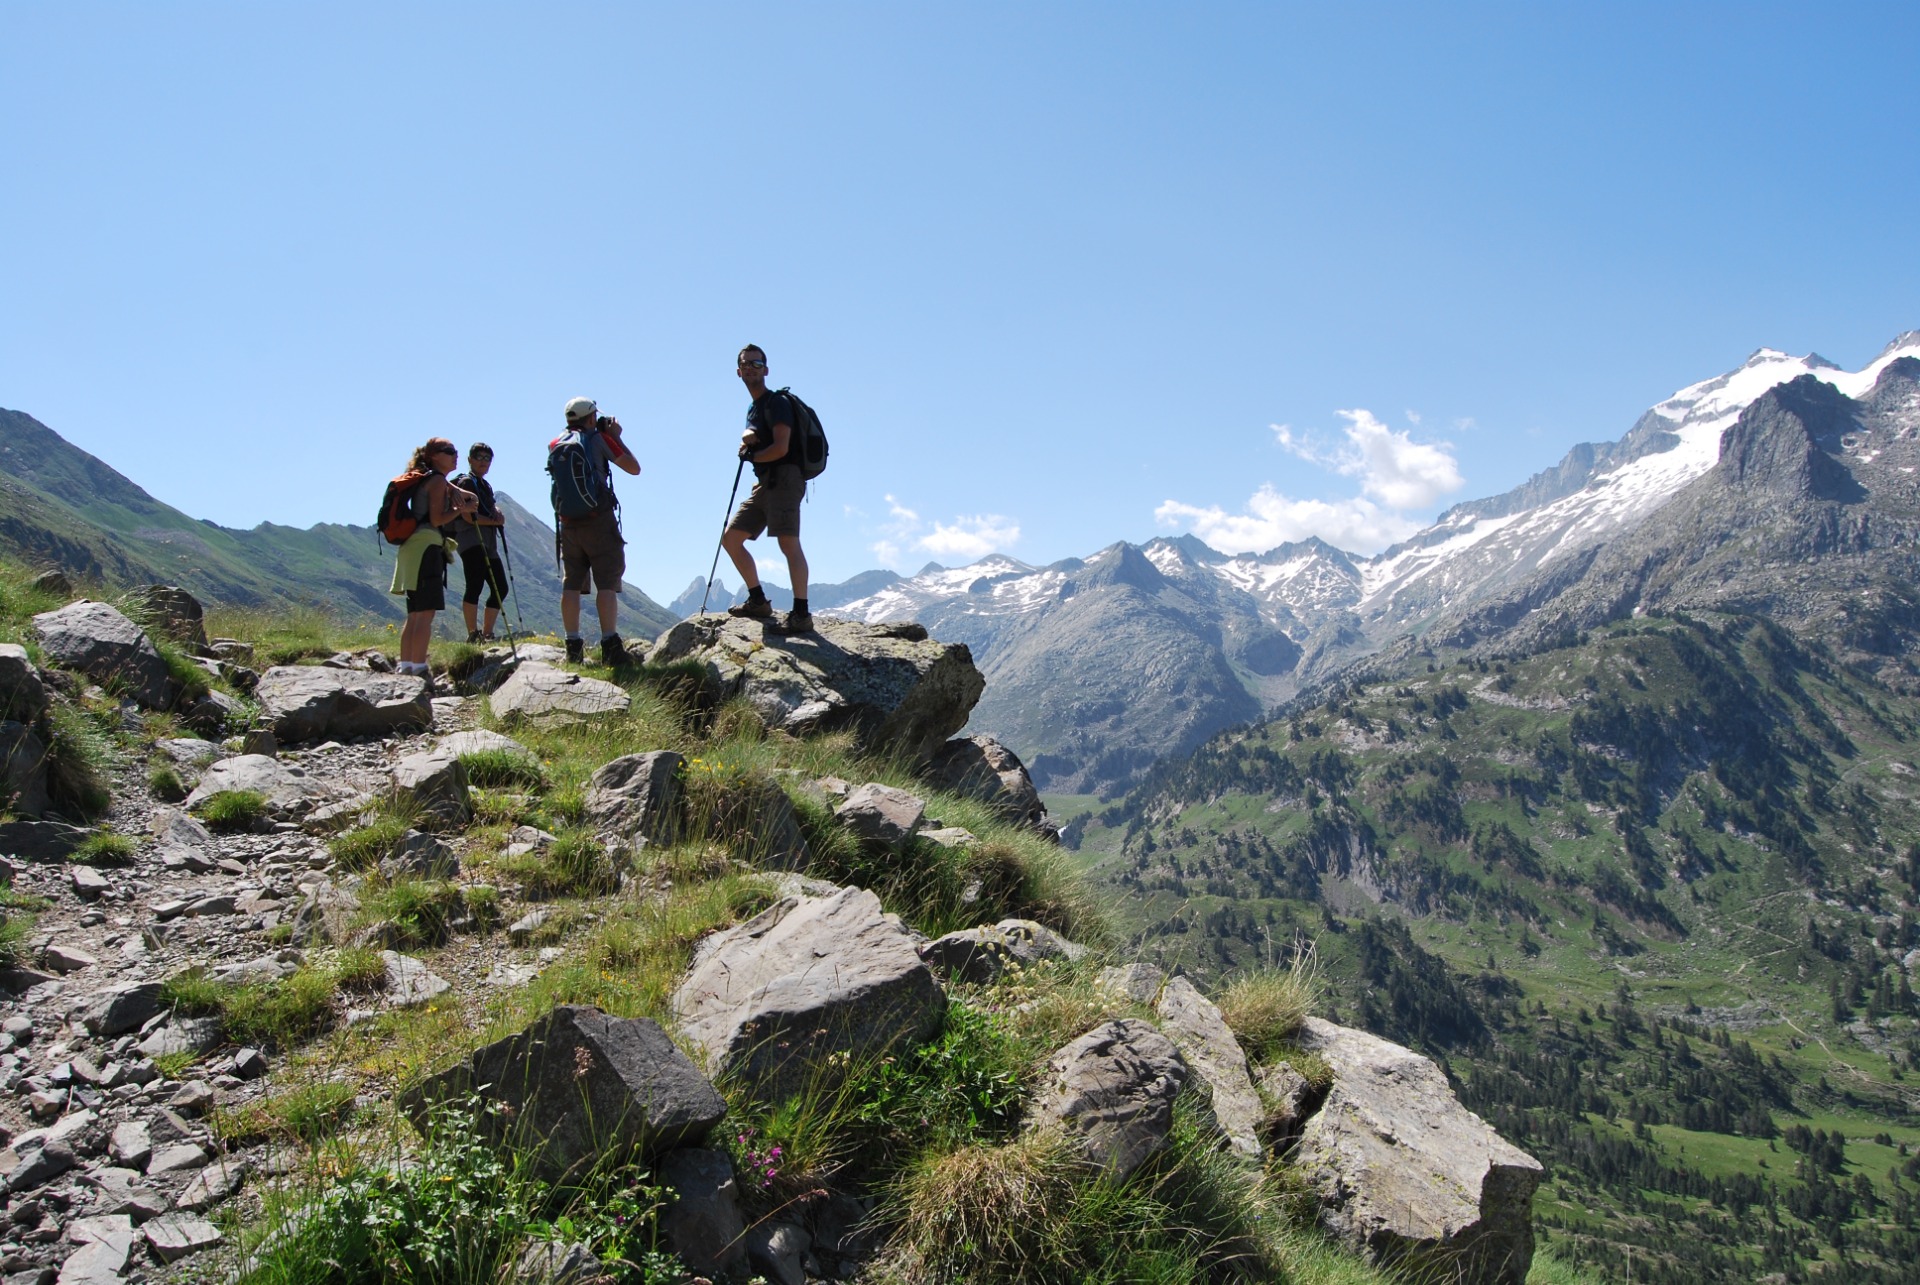  cuatro personas en la cima de una montana rocosa mirando al paisaje